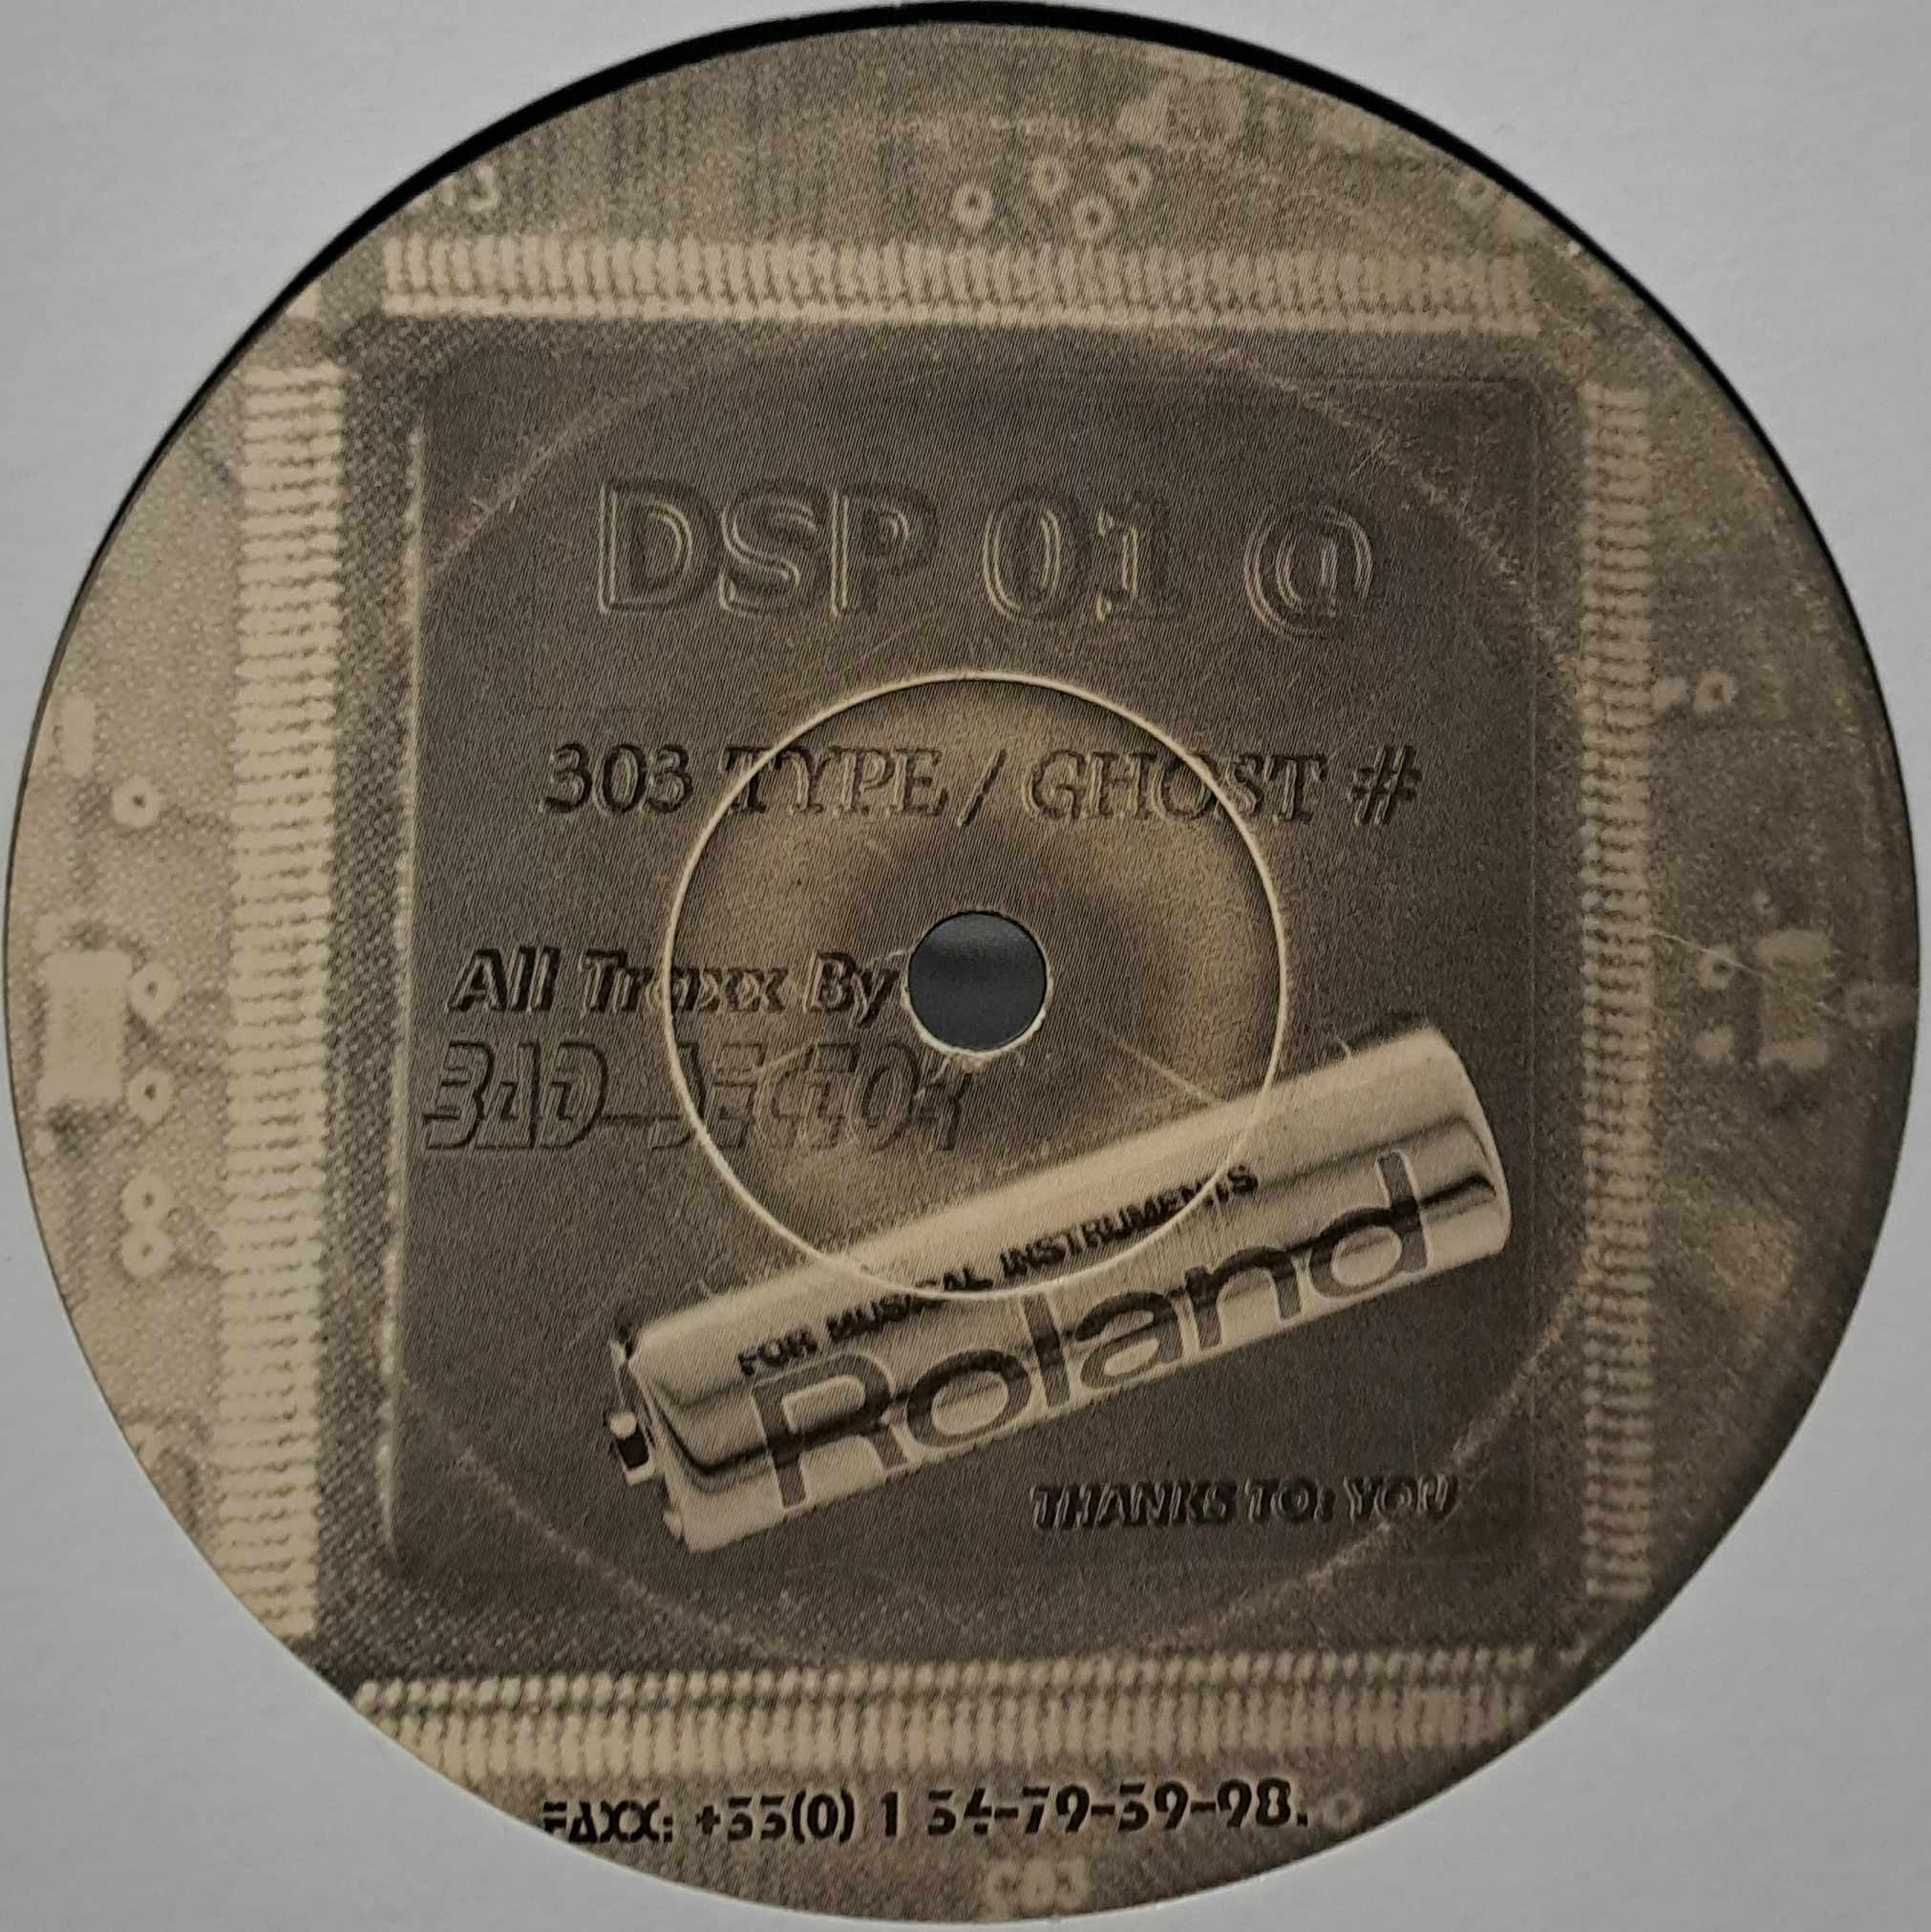 DSP 01 - vinyle freetekno